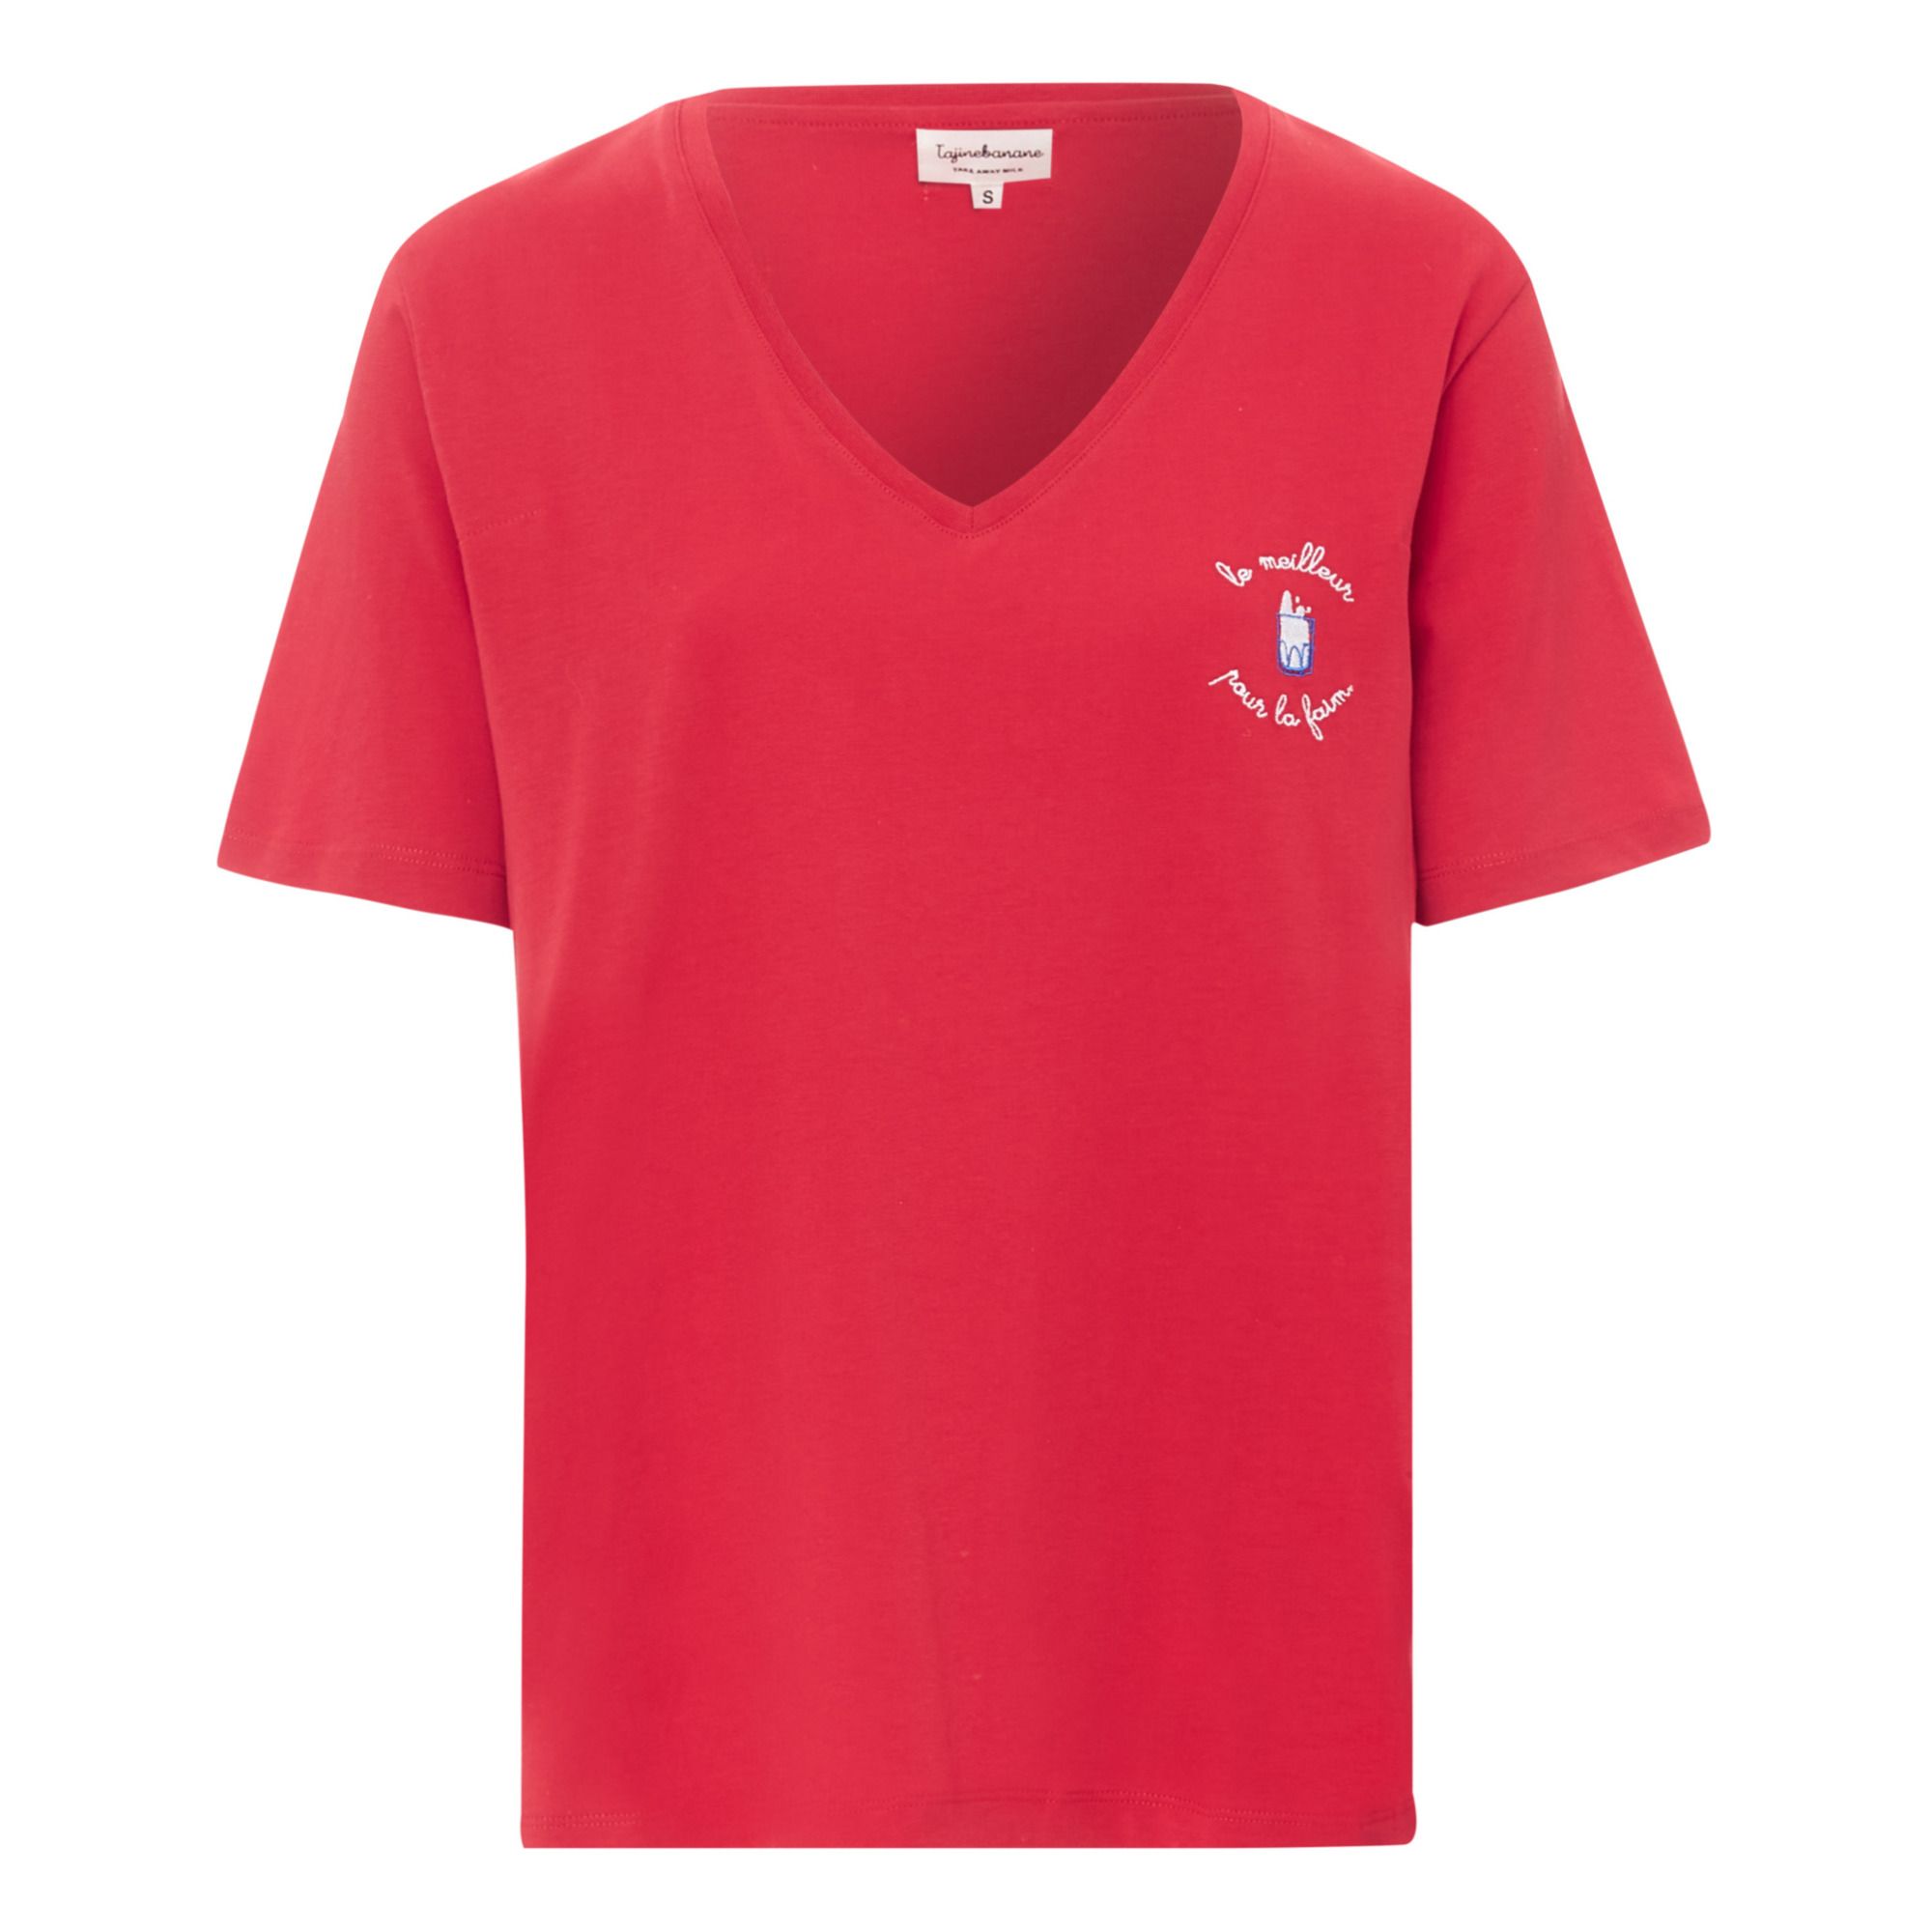 Tajinebanane - T-Shirt d'allaitement Le meilleur pour la faim - Femme - Rouge